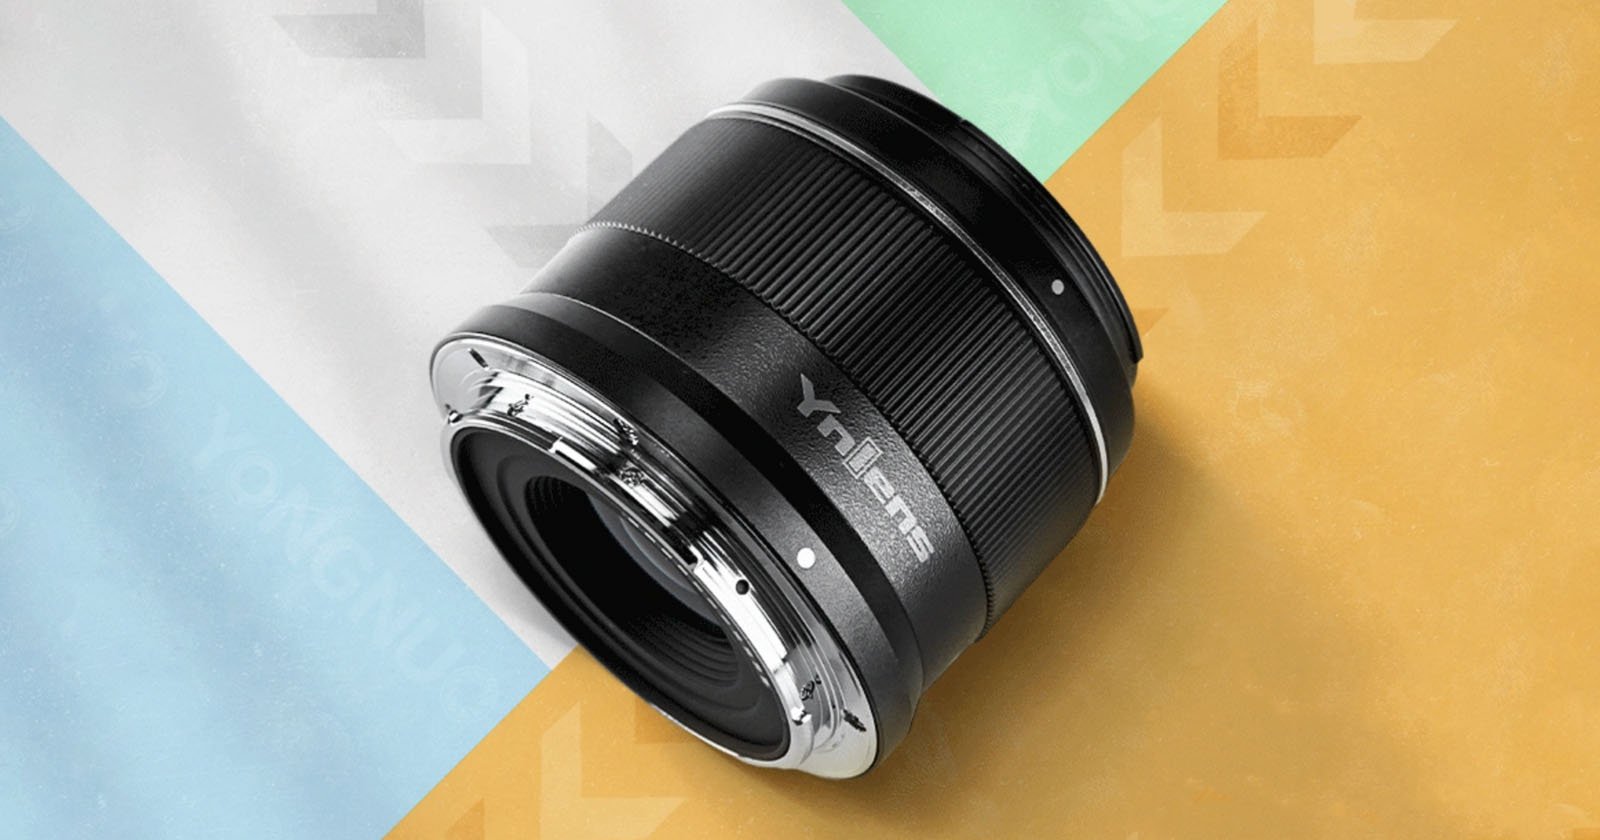 Yongnuos AF 50mm f/1.8 Lens for APS-C Nikon Z Cameras Costs $120